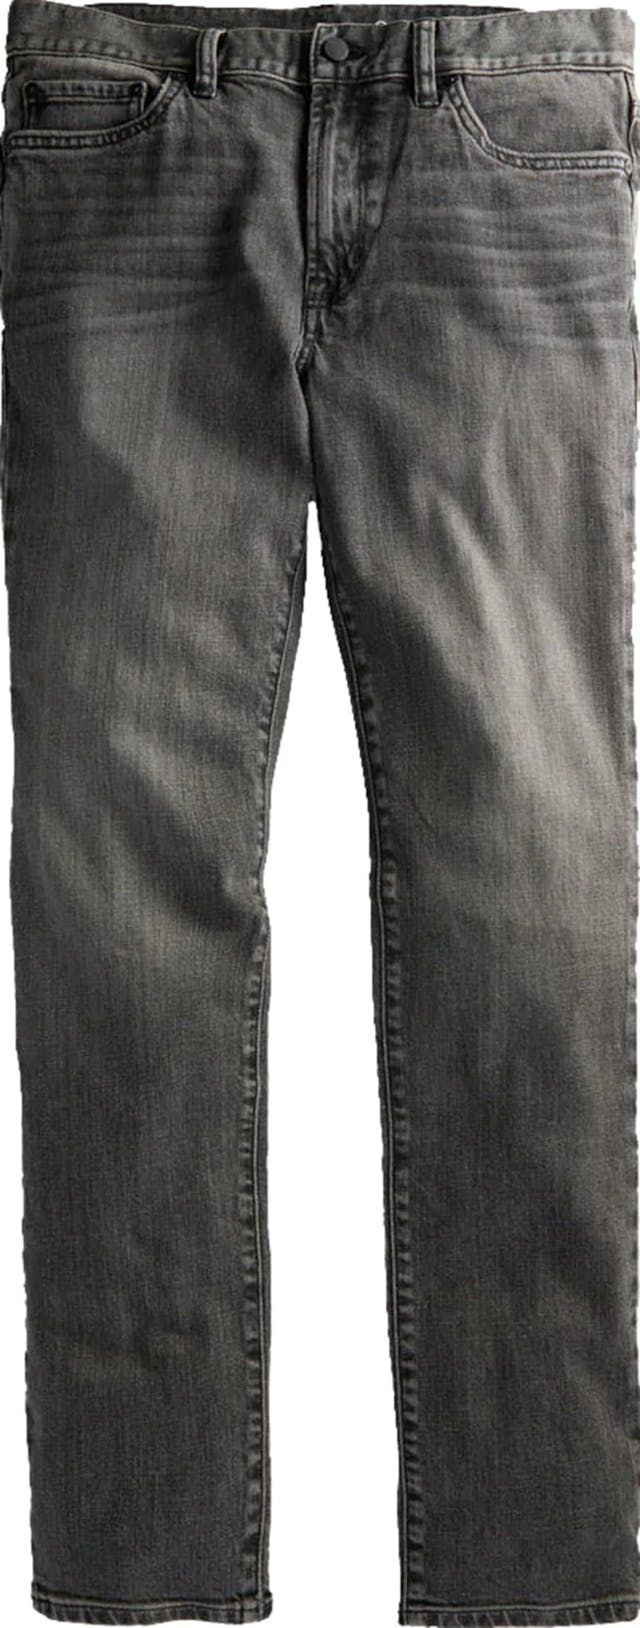 Product image for Ambassador Slim Fit Jeans - Men's